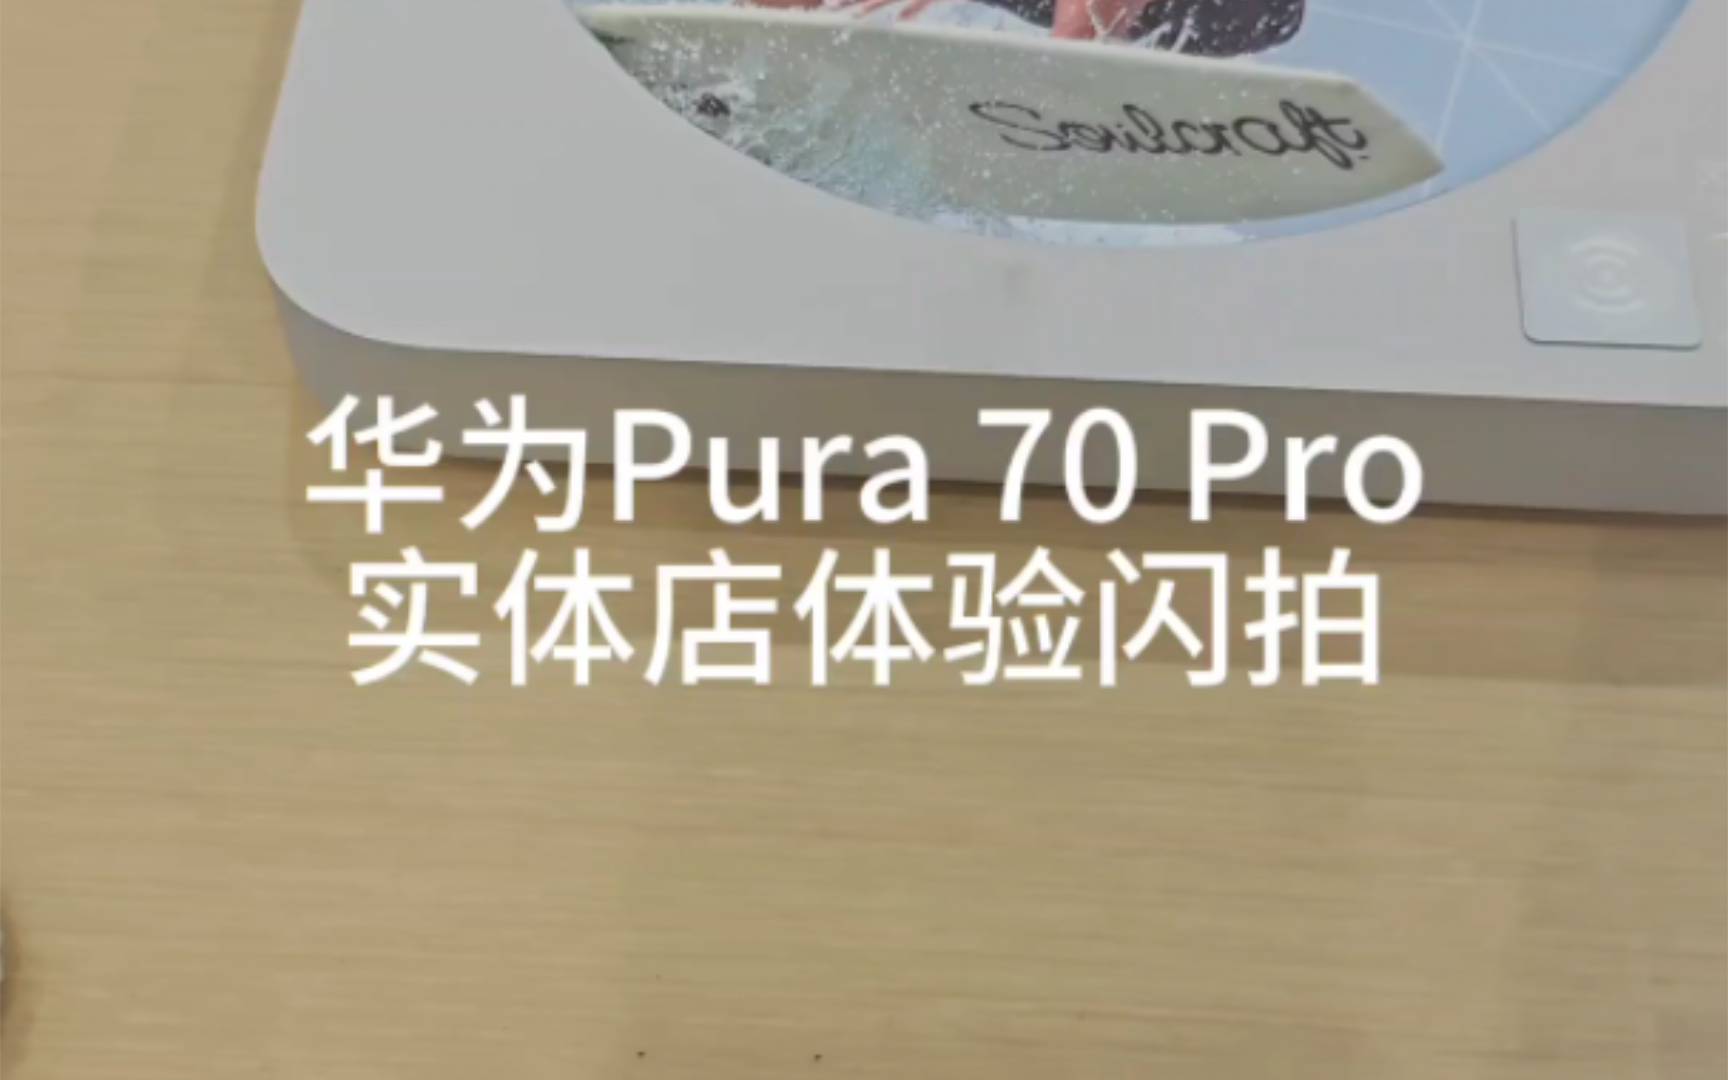 华为pura70